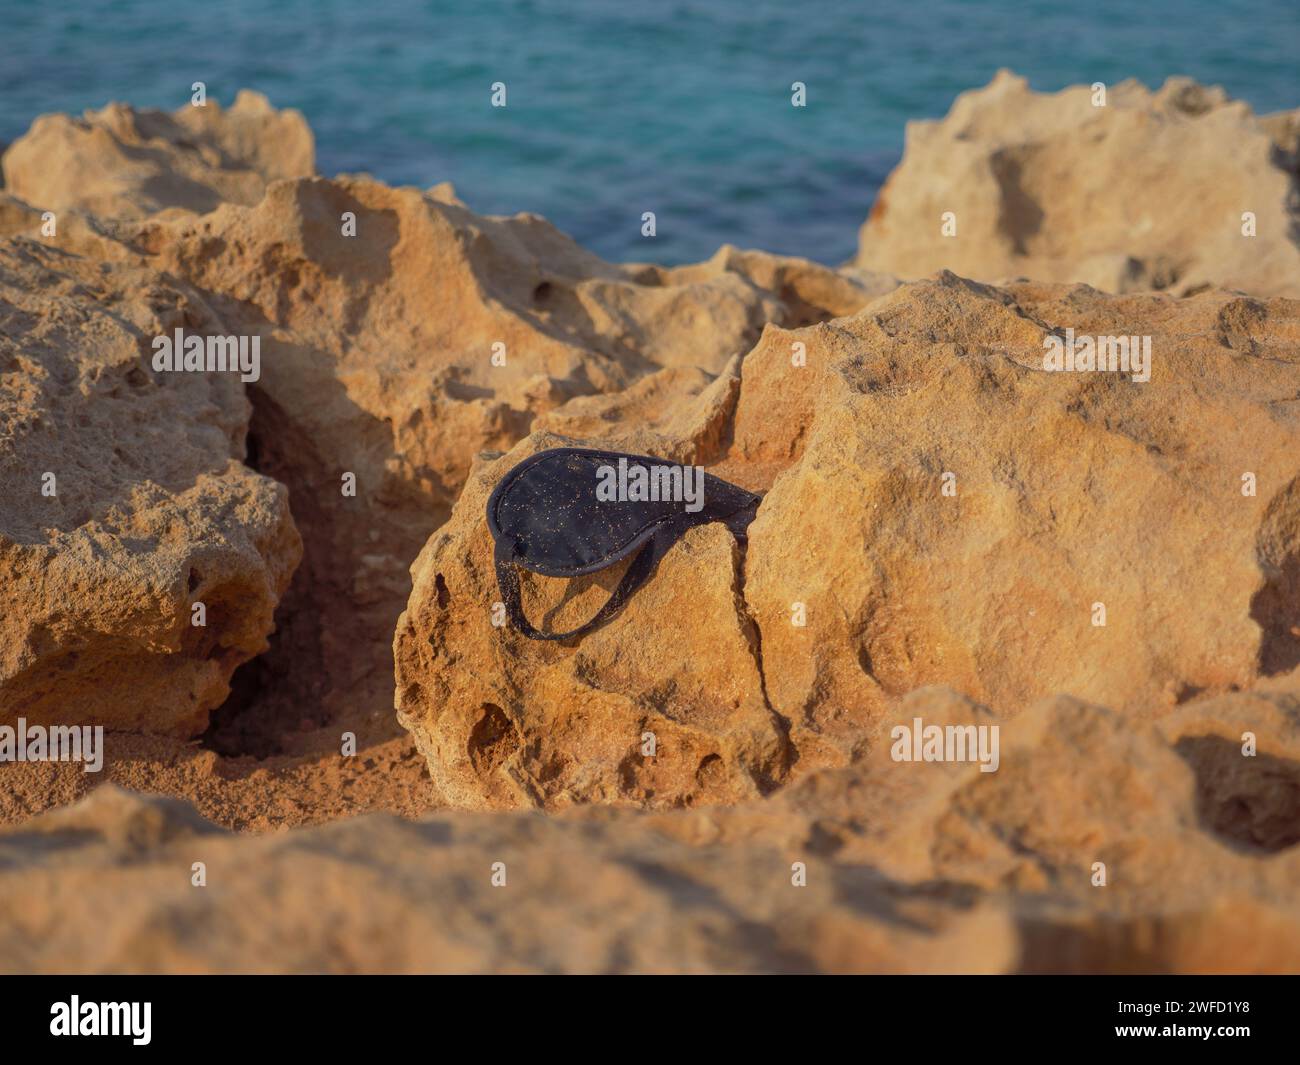 Schmutzige schwarze Schlafmaske, die mit Staub und Sand bedeckt ist, liegt verloren und vergessen auf einem großen porösen Felsen am Ufer des cyanischen Mittelmeers in Zypern. Stockfoto